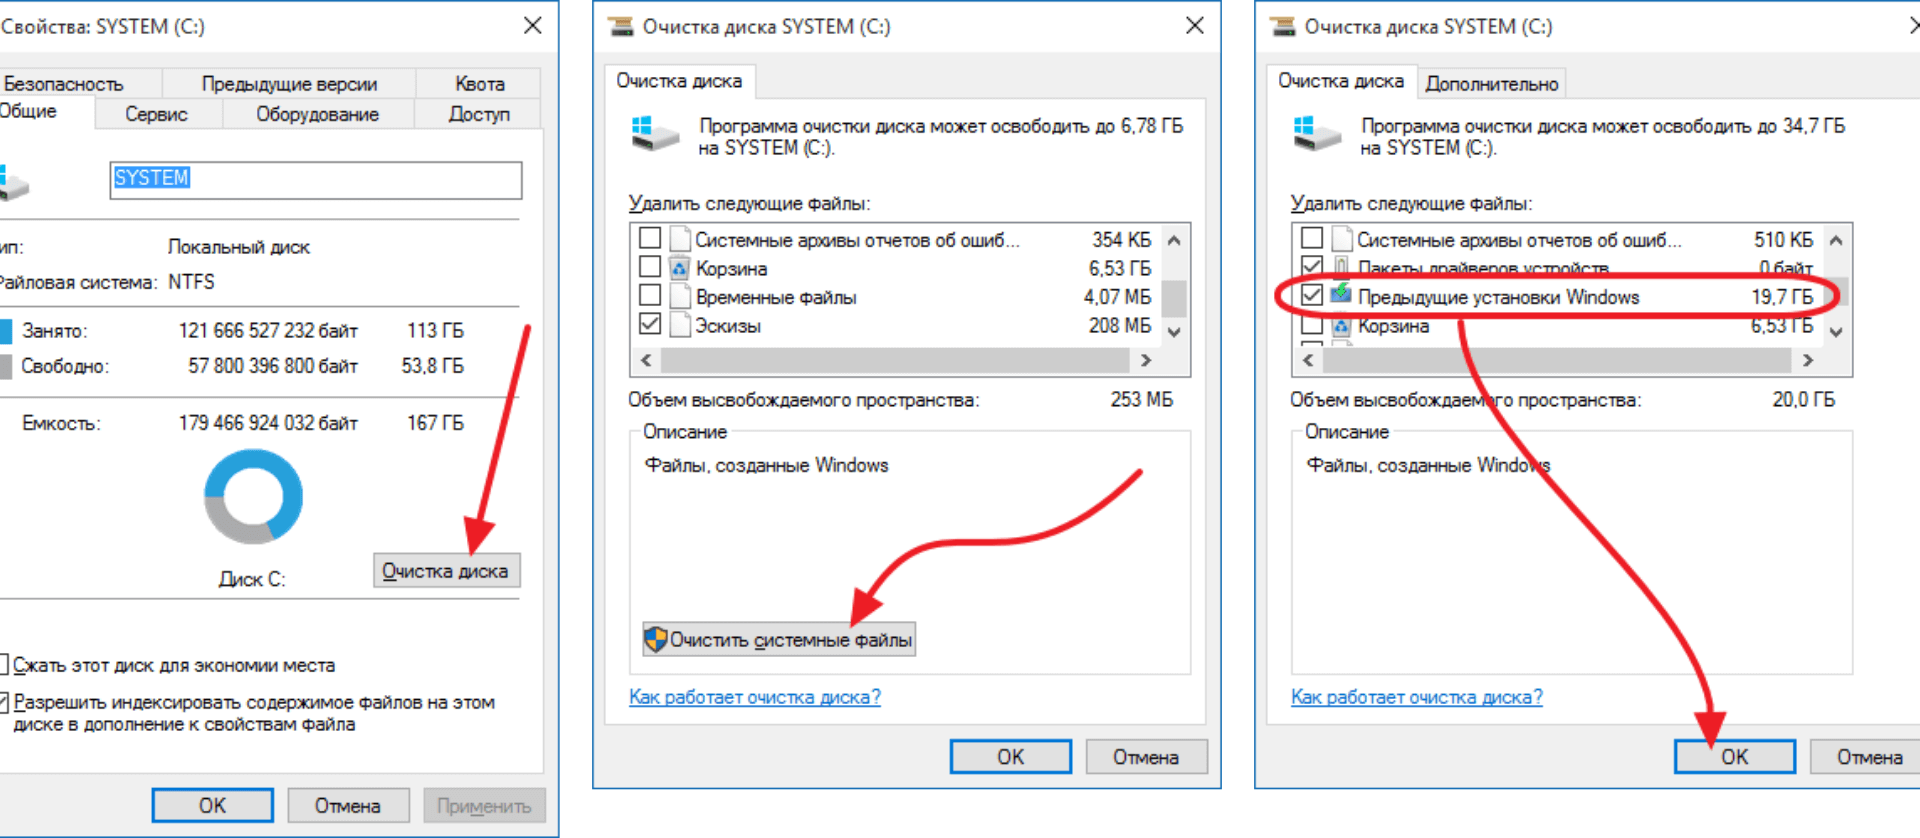 Удаление обновлений Windows , с помощью очистки диска